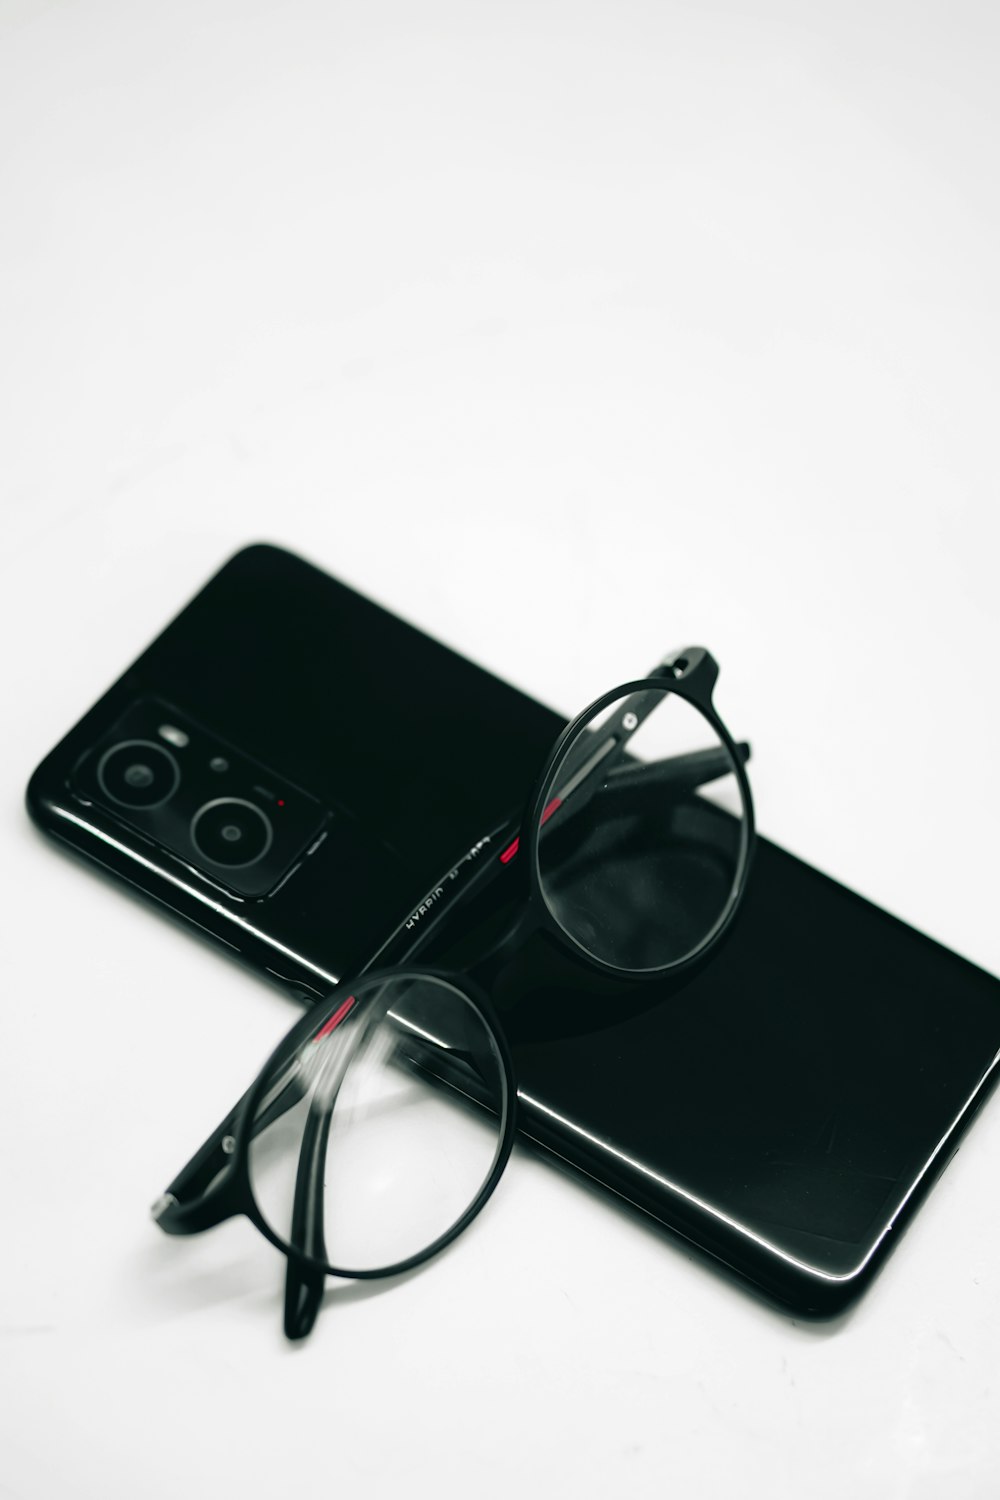 Foto zum Thema Eine brille, die auf einem telefon sitzt – Kostenloses Bild  zu Mobiltelefon auf Unsplash